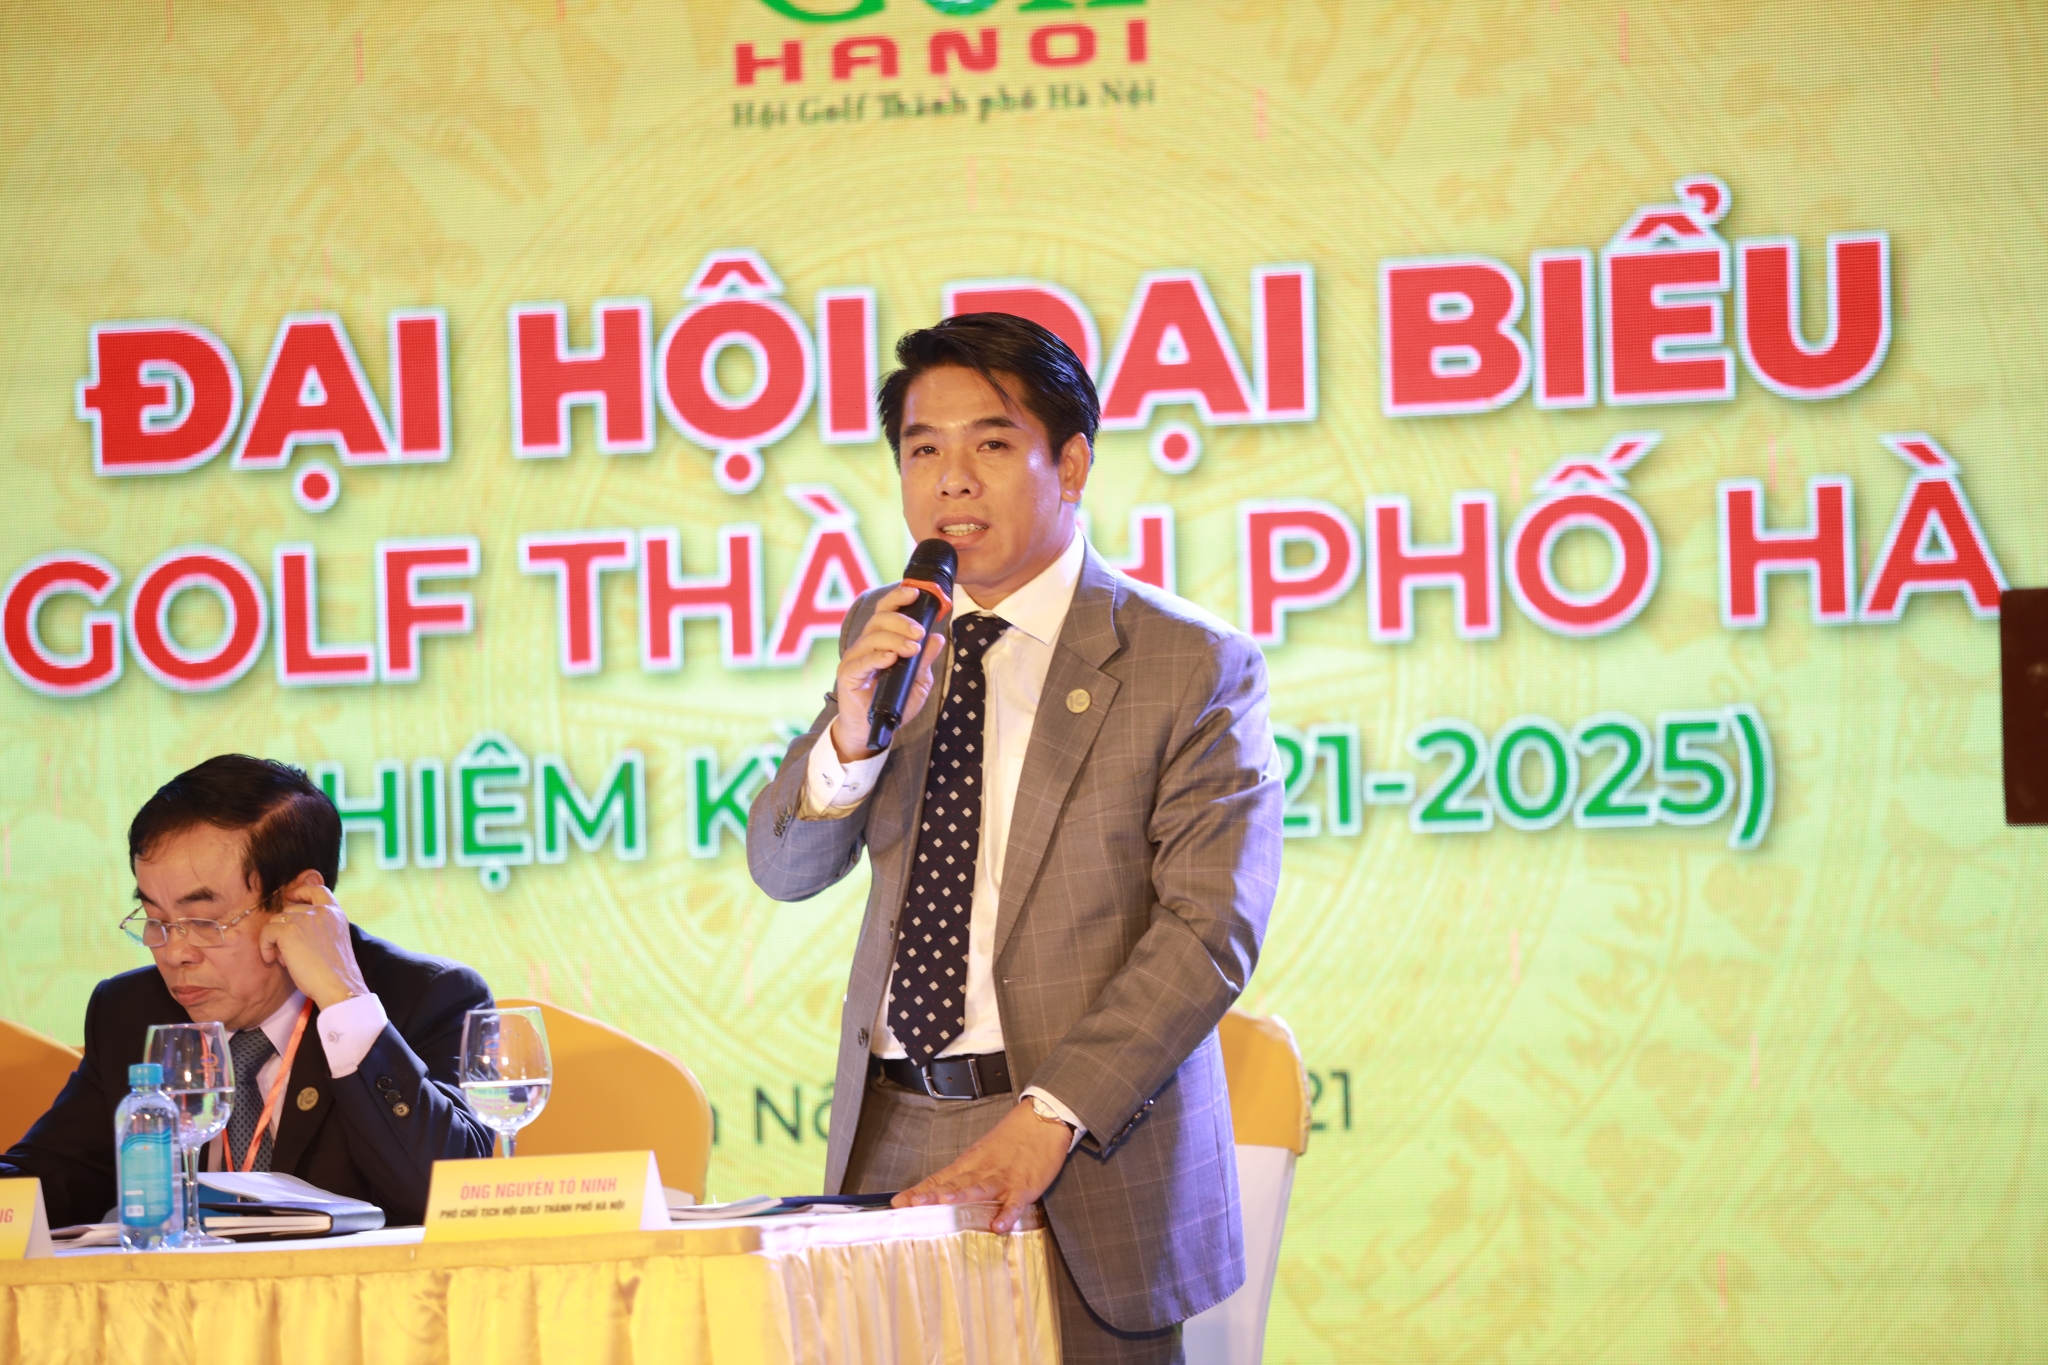 Ông Nguyễn Tô Ninh được bầu làm chủ tịch Hội Golf Thành phố Hà Nội nhiệm kỳ III (2021-2025)